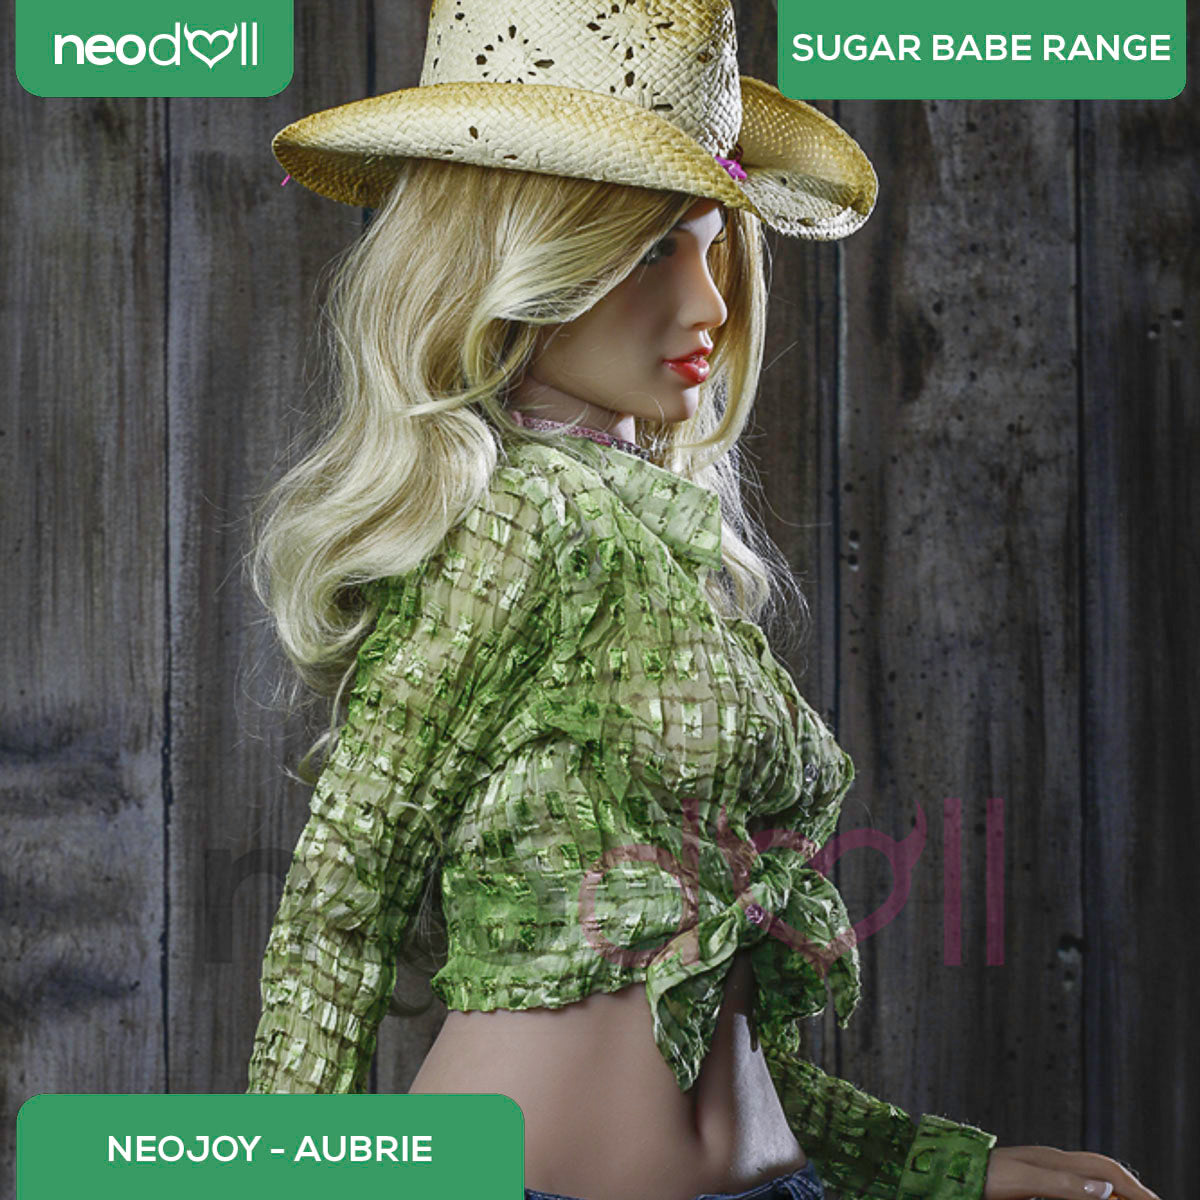 Neodoll Sugar Babe - Aubrie - Realistic Sex Doll - Gel Breast - Uterus - 168cm - Tan